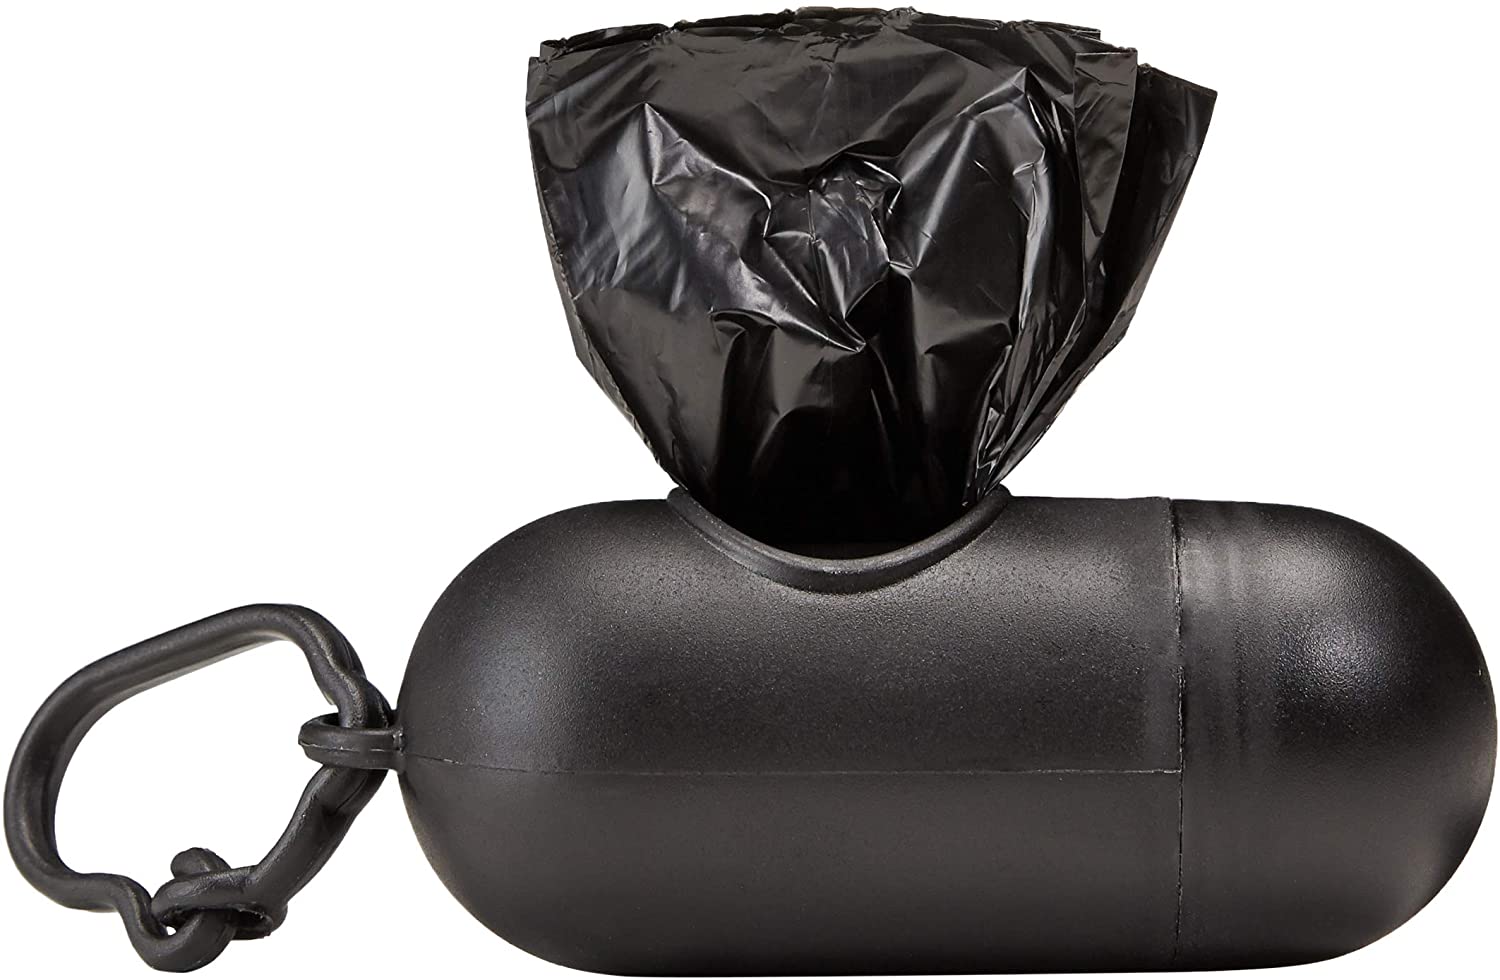  AmazonBasics - Bolsas para excrementos de perro con dispensador y clip para correa (600 bolsas) 